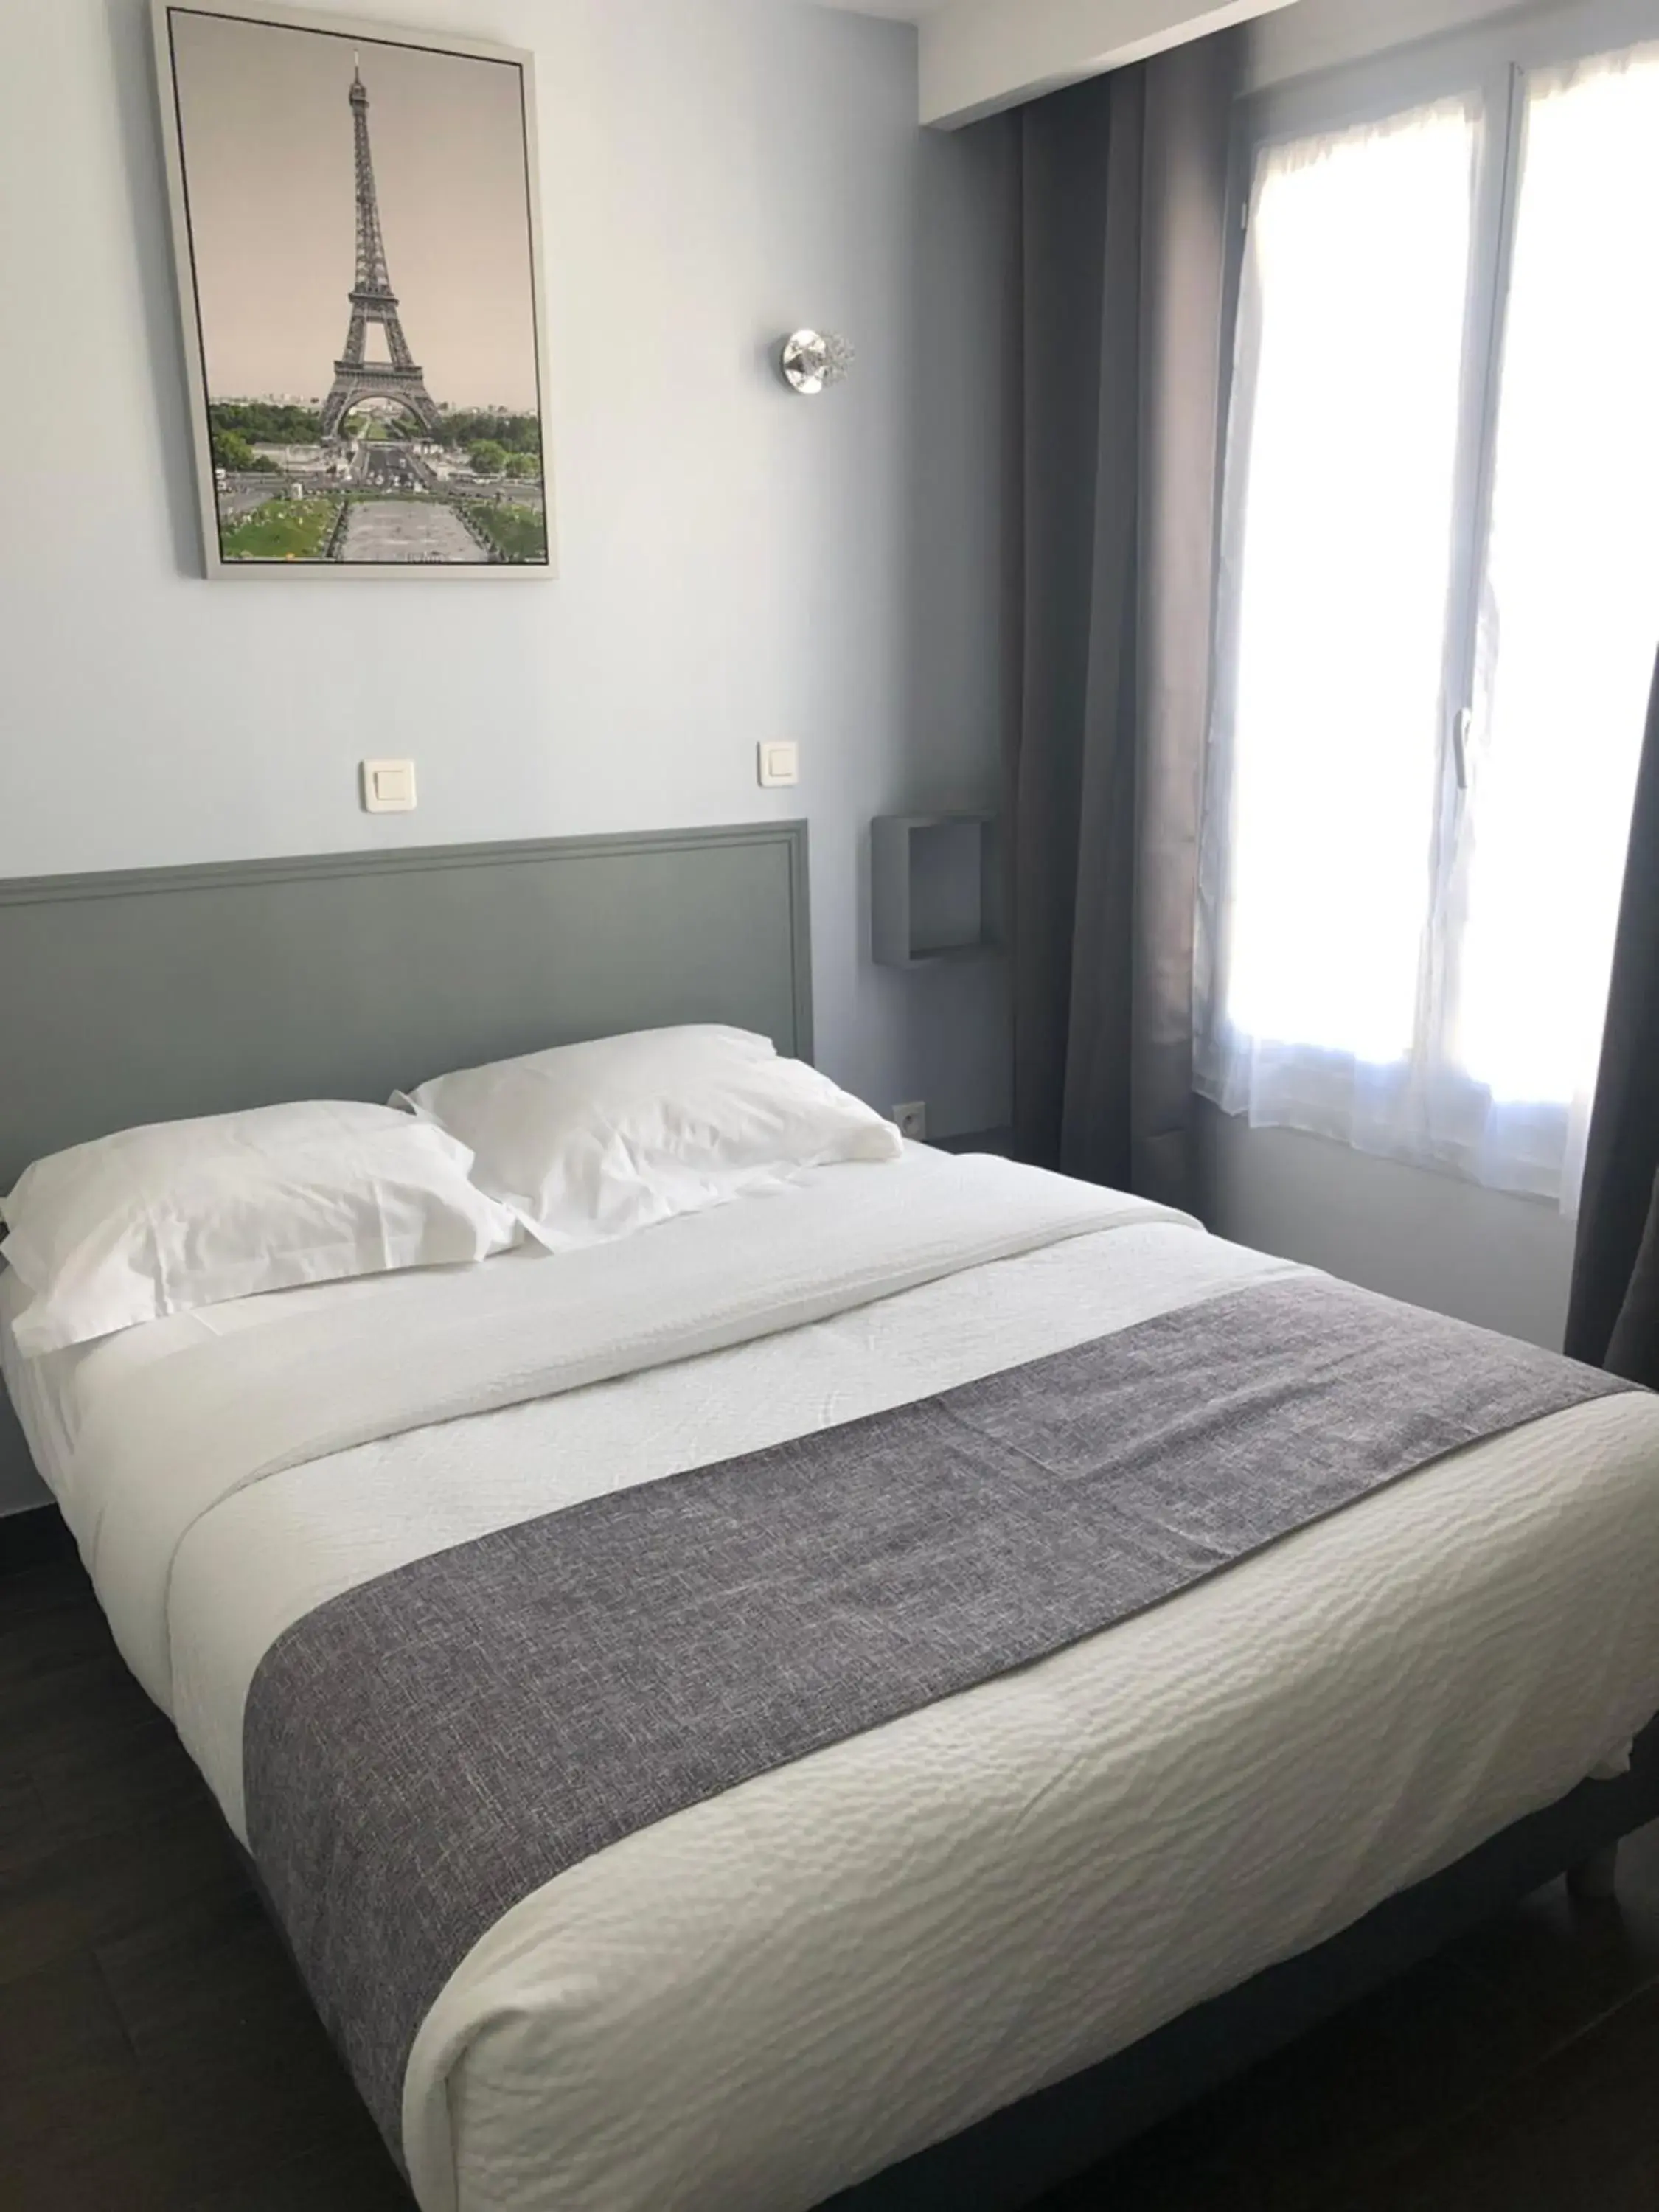 Bed in Hôtel Clauzel Paris